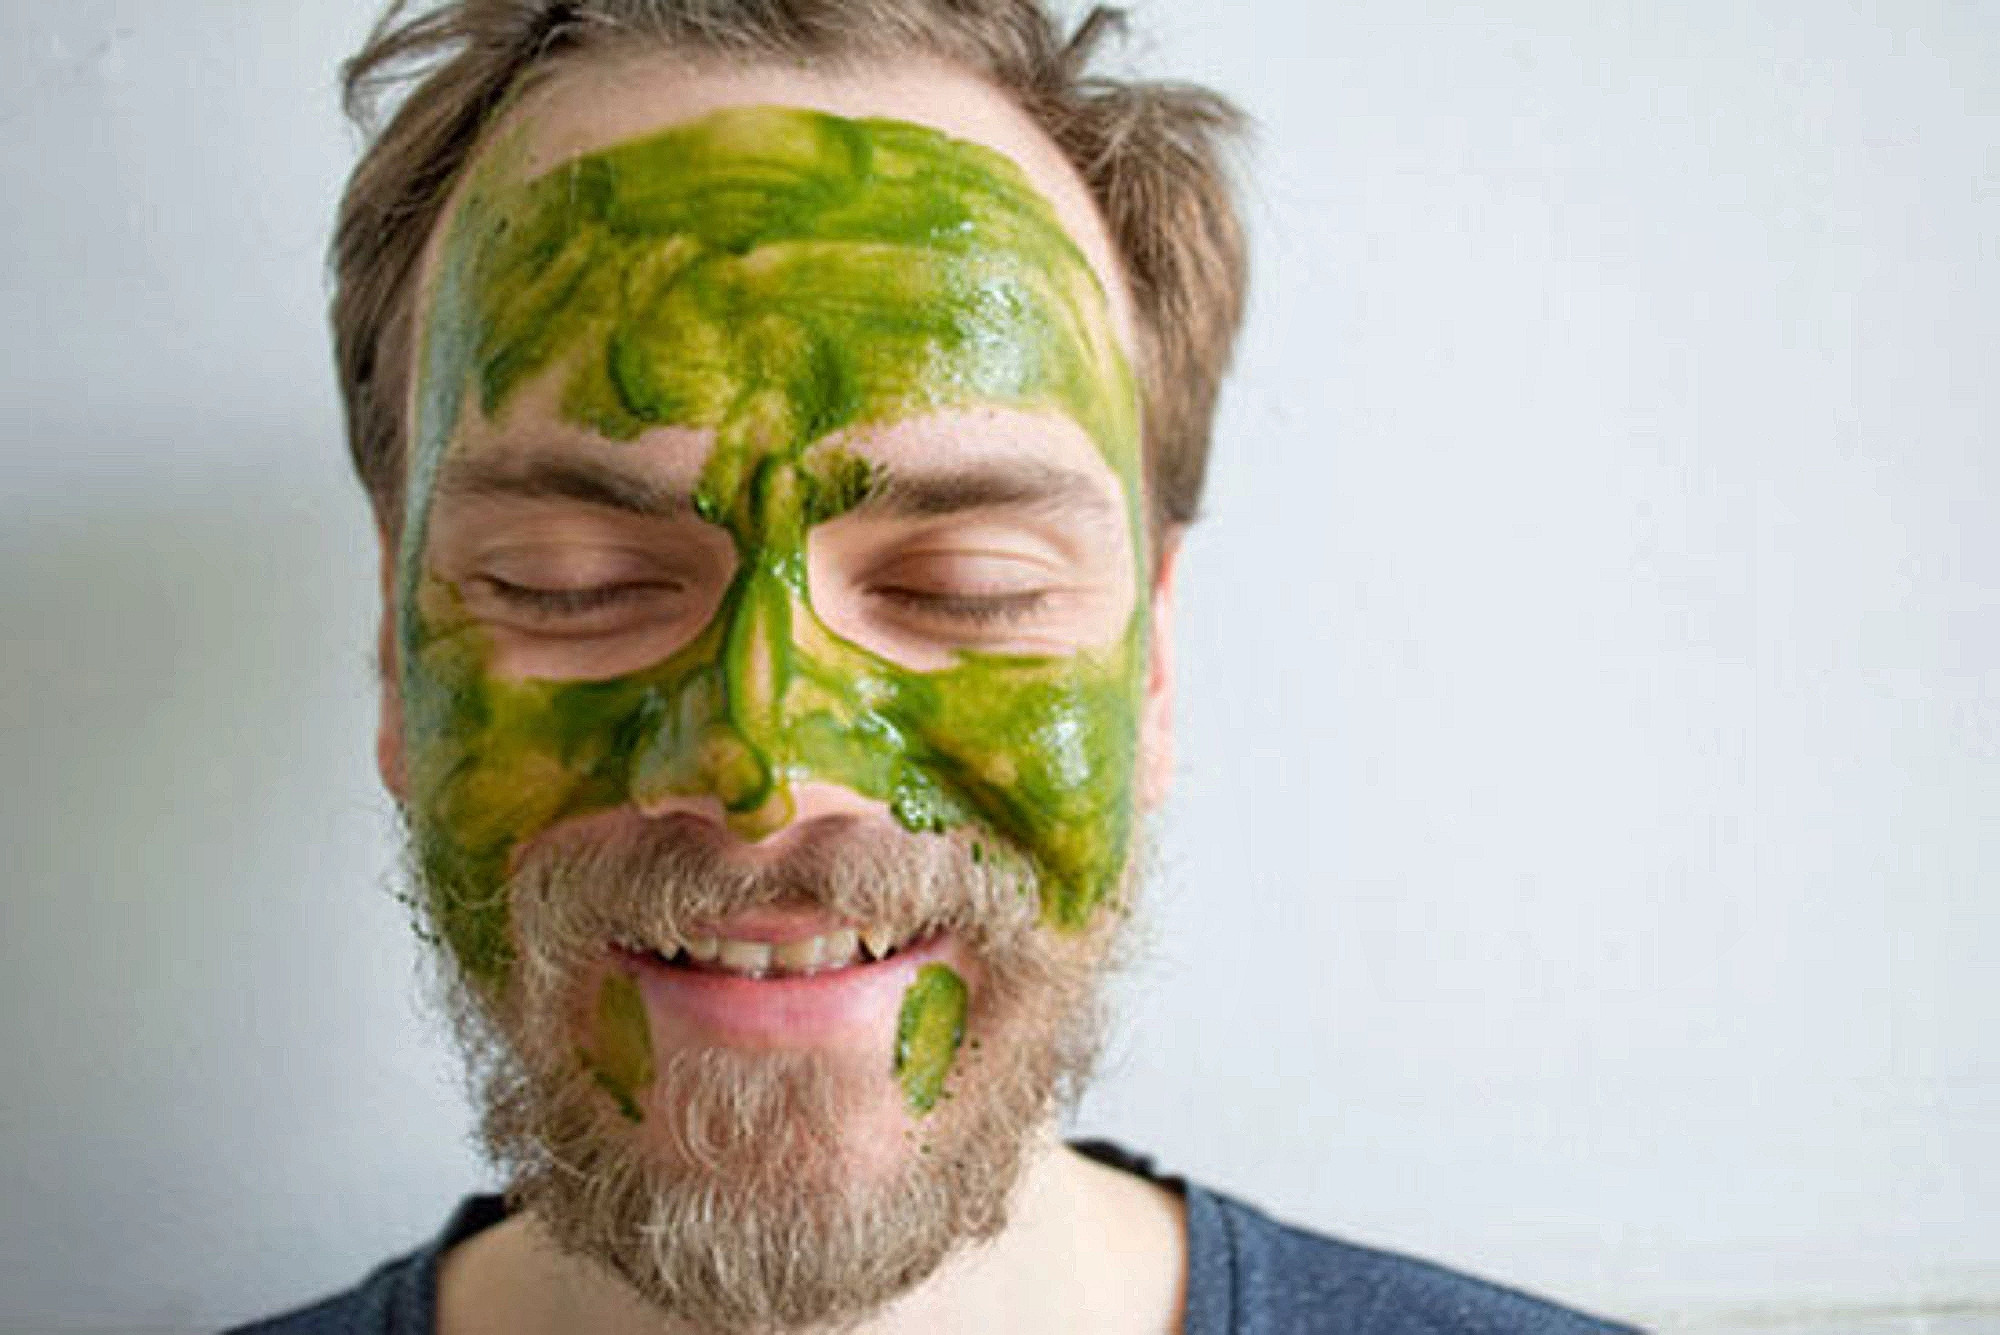 Художники Ник Космас, Мартин Такер и&nbsp;Битси Нокс произвели сорт маття, который предложили использовать в&nbsp;качестве маски из&nbsp;зеленого чая со&nbsp;следующей рекомендацией: «Если, смыв маску, вы заметите, что лицо стало чуть зеленее обычного, не&nbsp;паникуйте: просто смойте лишнюю “зелень” с&nbsp;помощью ватного диска и&nbsp;масла для лица или мягкой пенки».